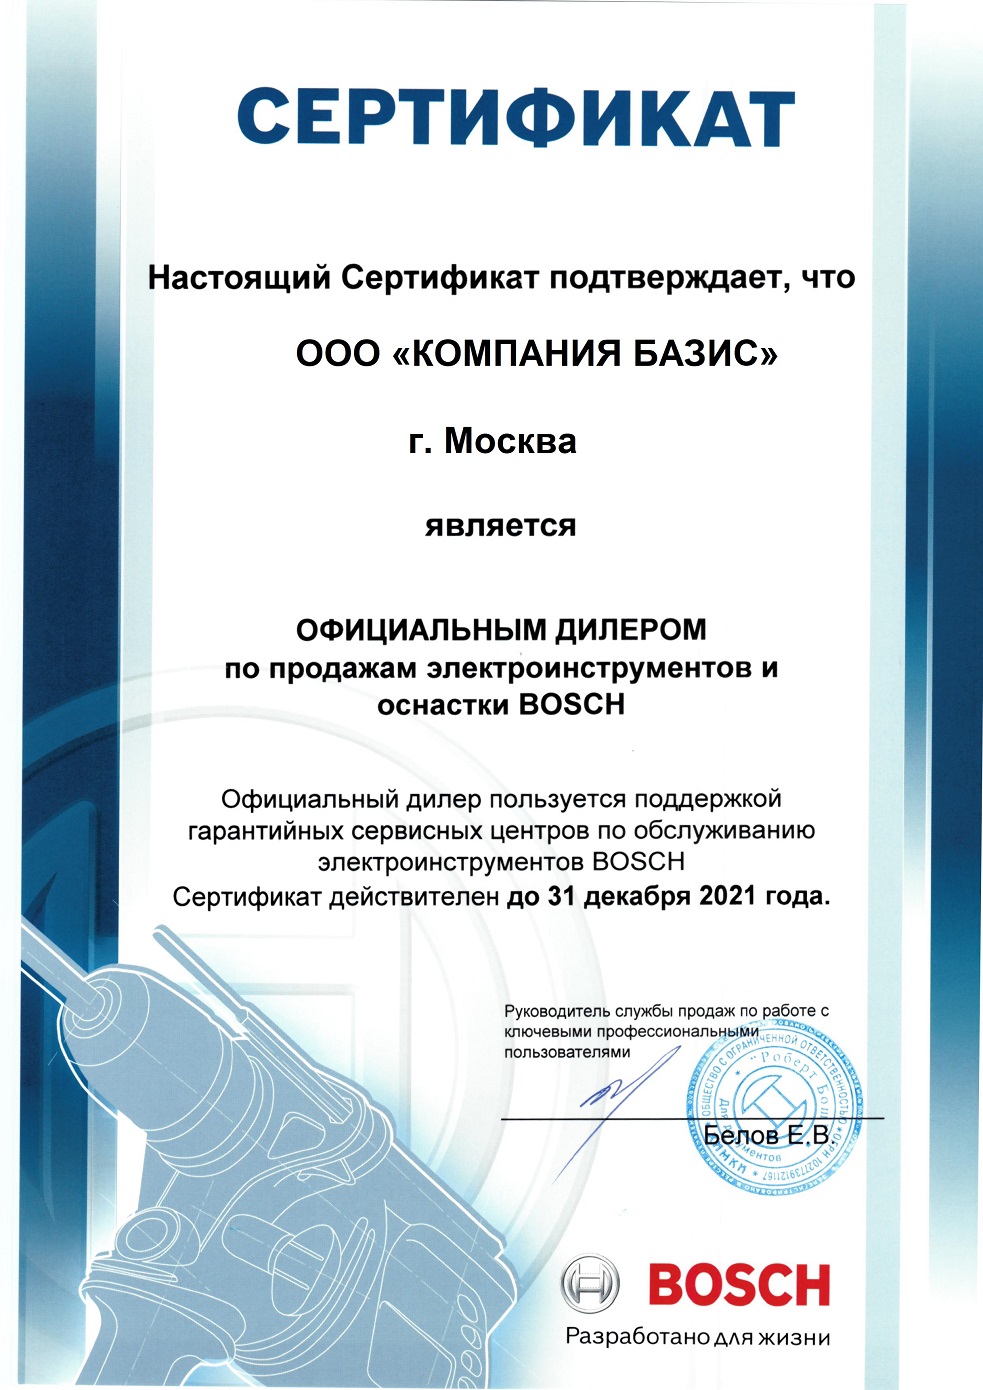 Сертификат официального дилера 2021